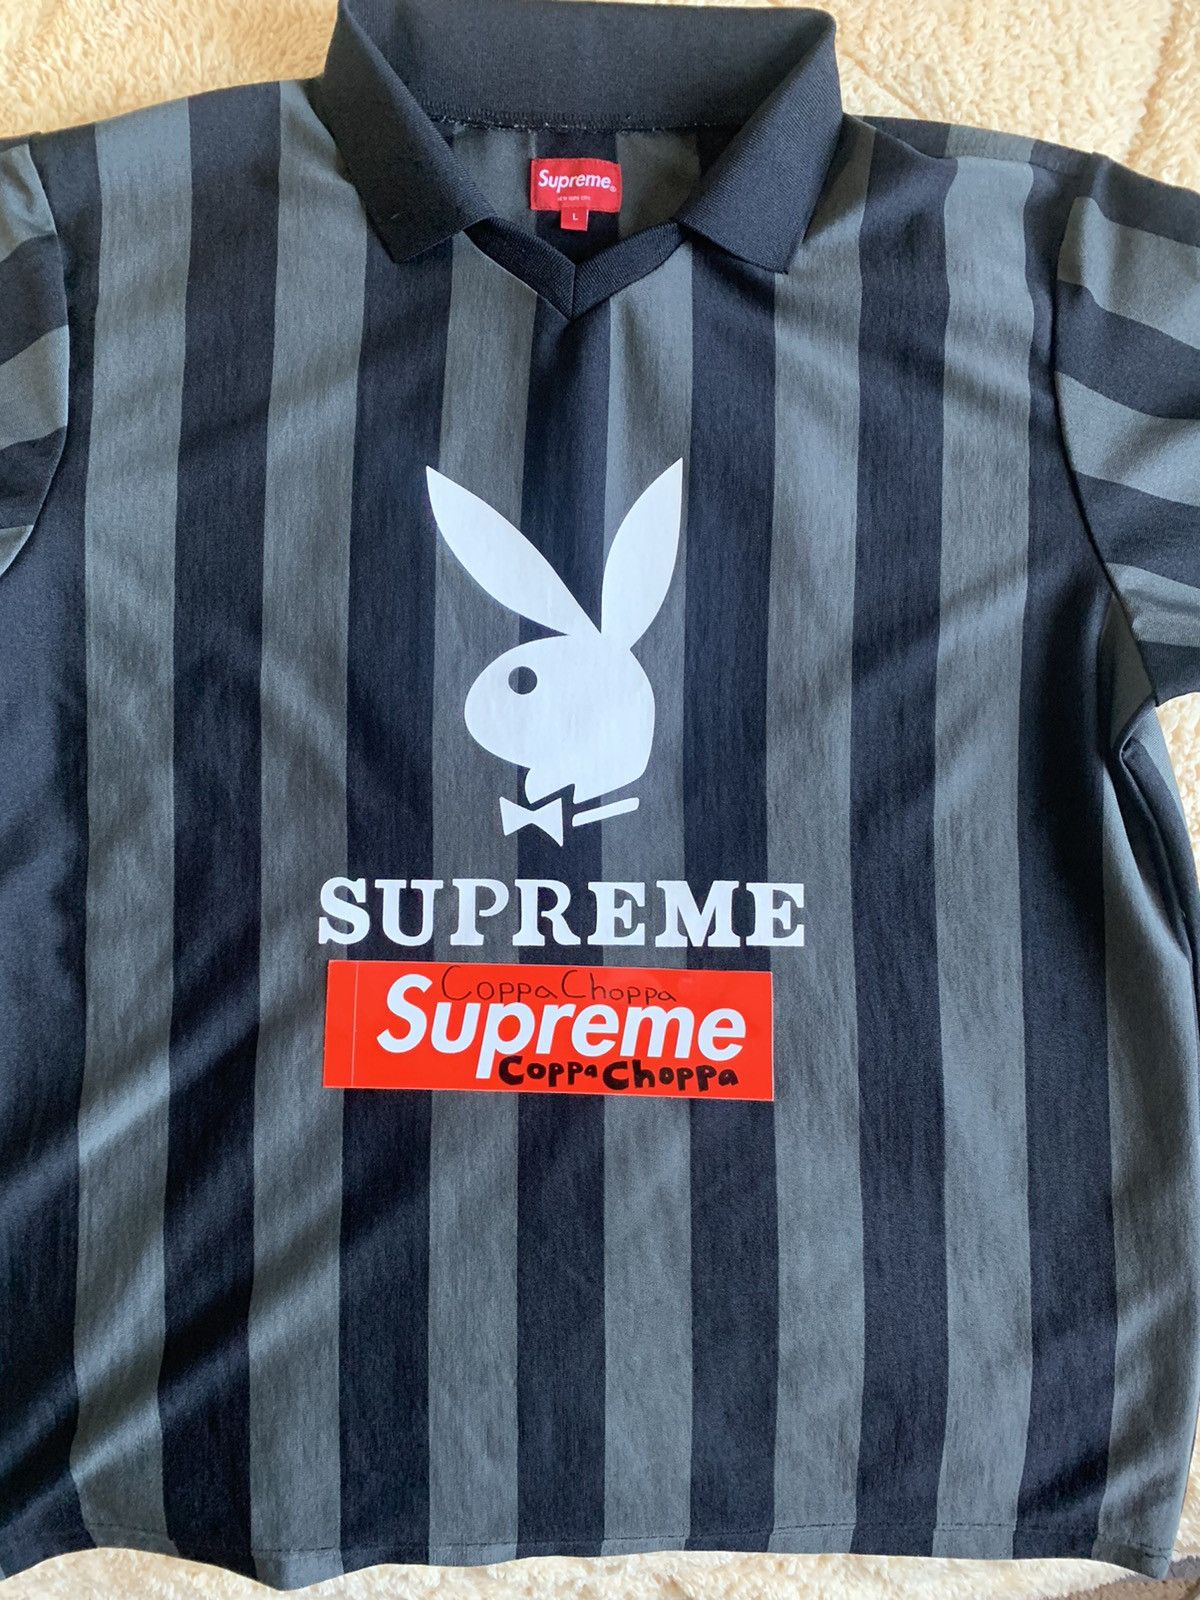 Supreme Supreme Playboy Soccer Jersey Black Large | Grailed